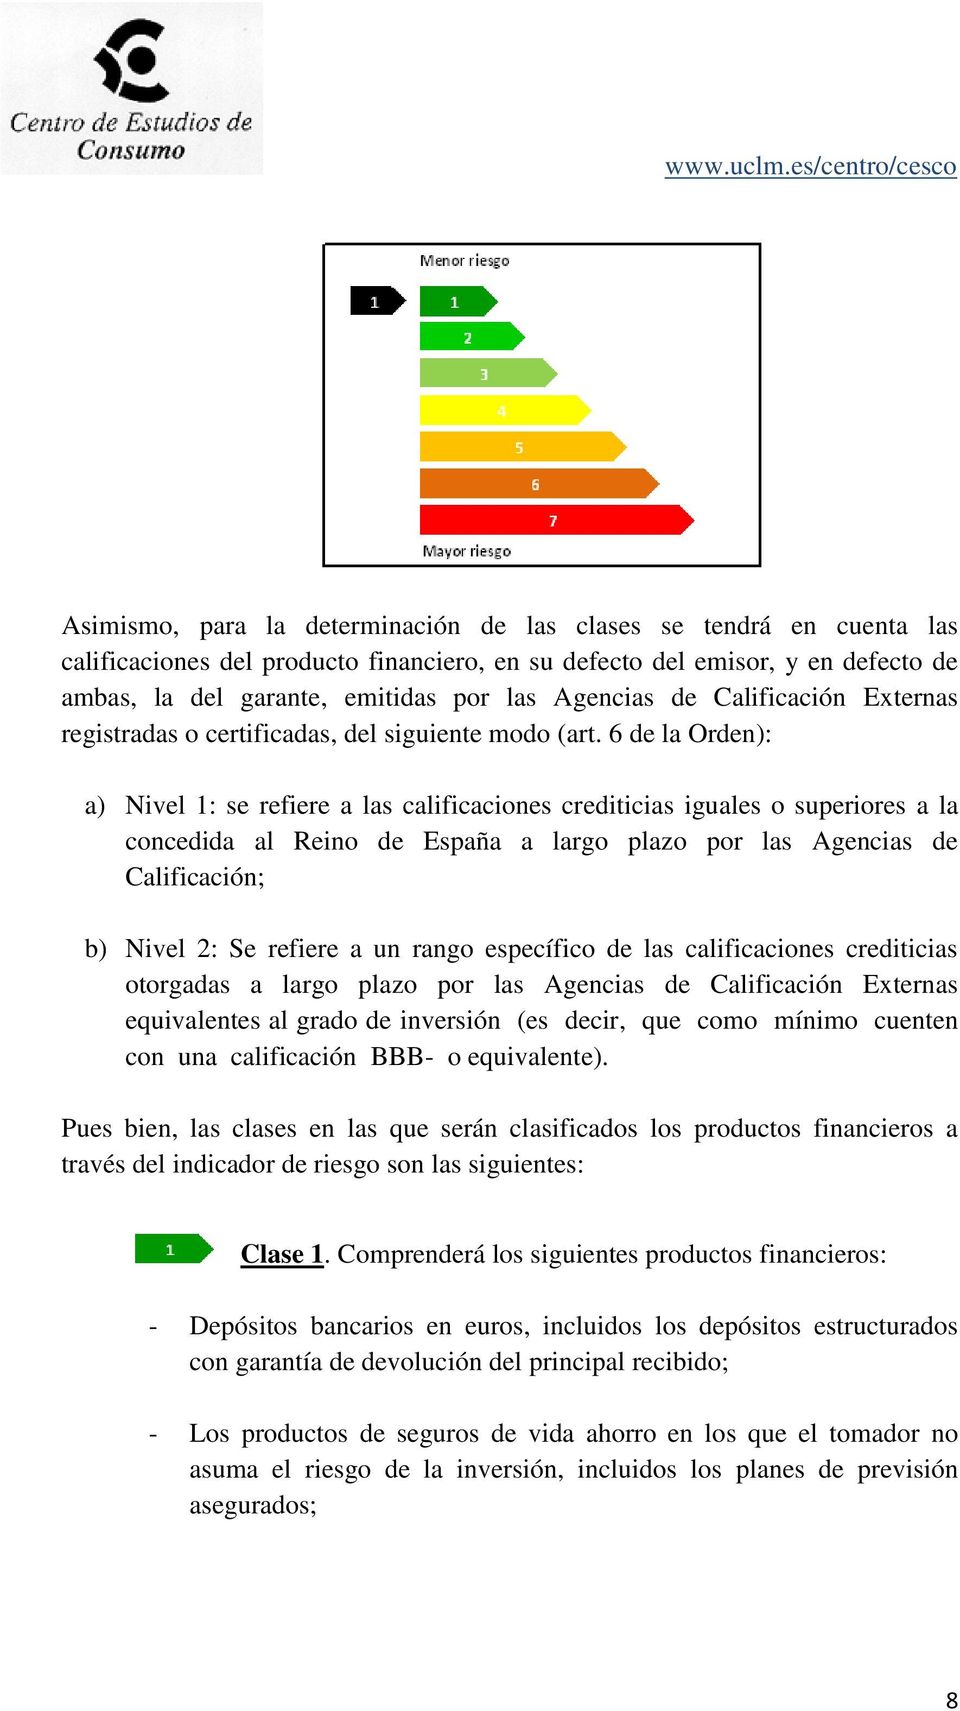 6 de la Orden): a) Nivel 1: se refiere a las calificaciones crediticias iguales o superiores a la concedida al Reino de España a largo plazo por las Agencias de Calificación; b) Nivel 2: Se refiere a